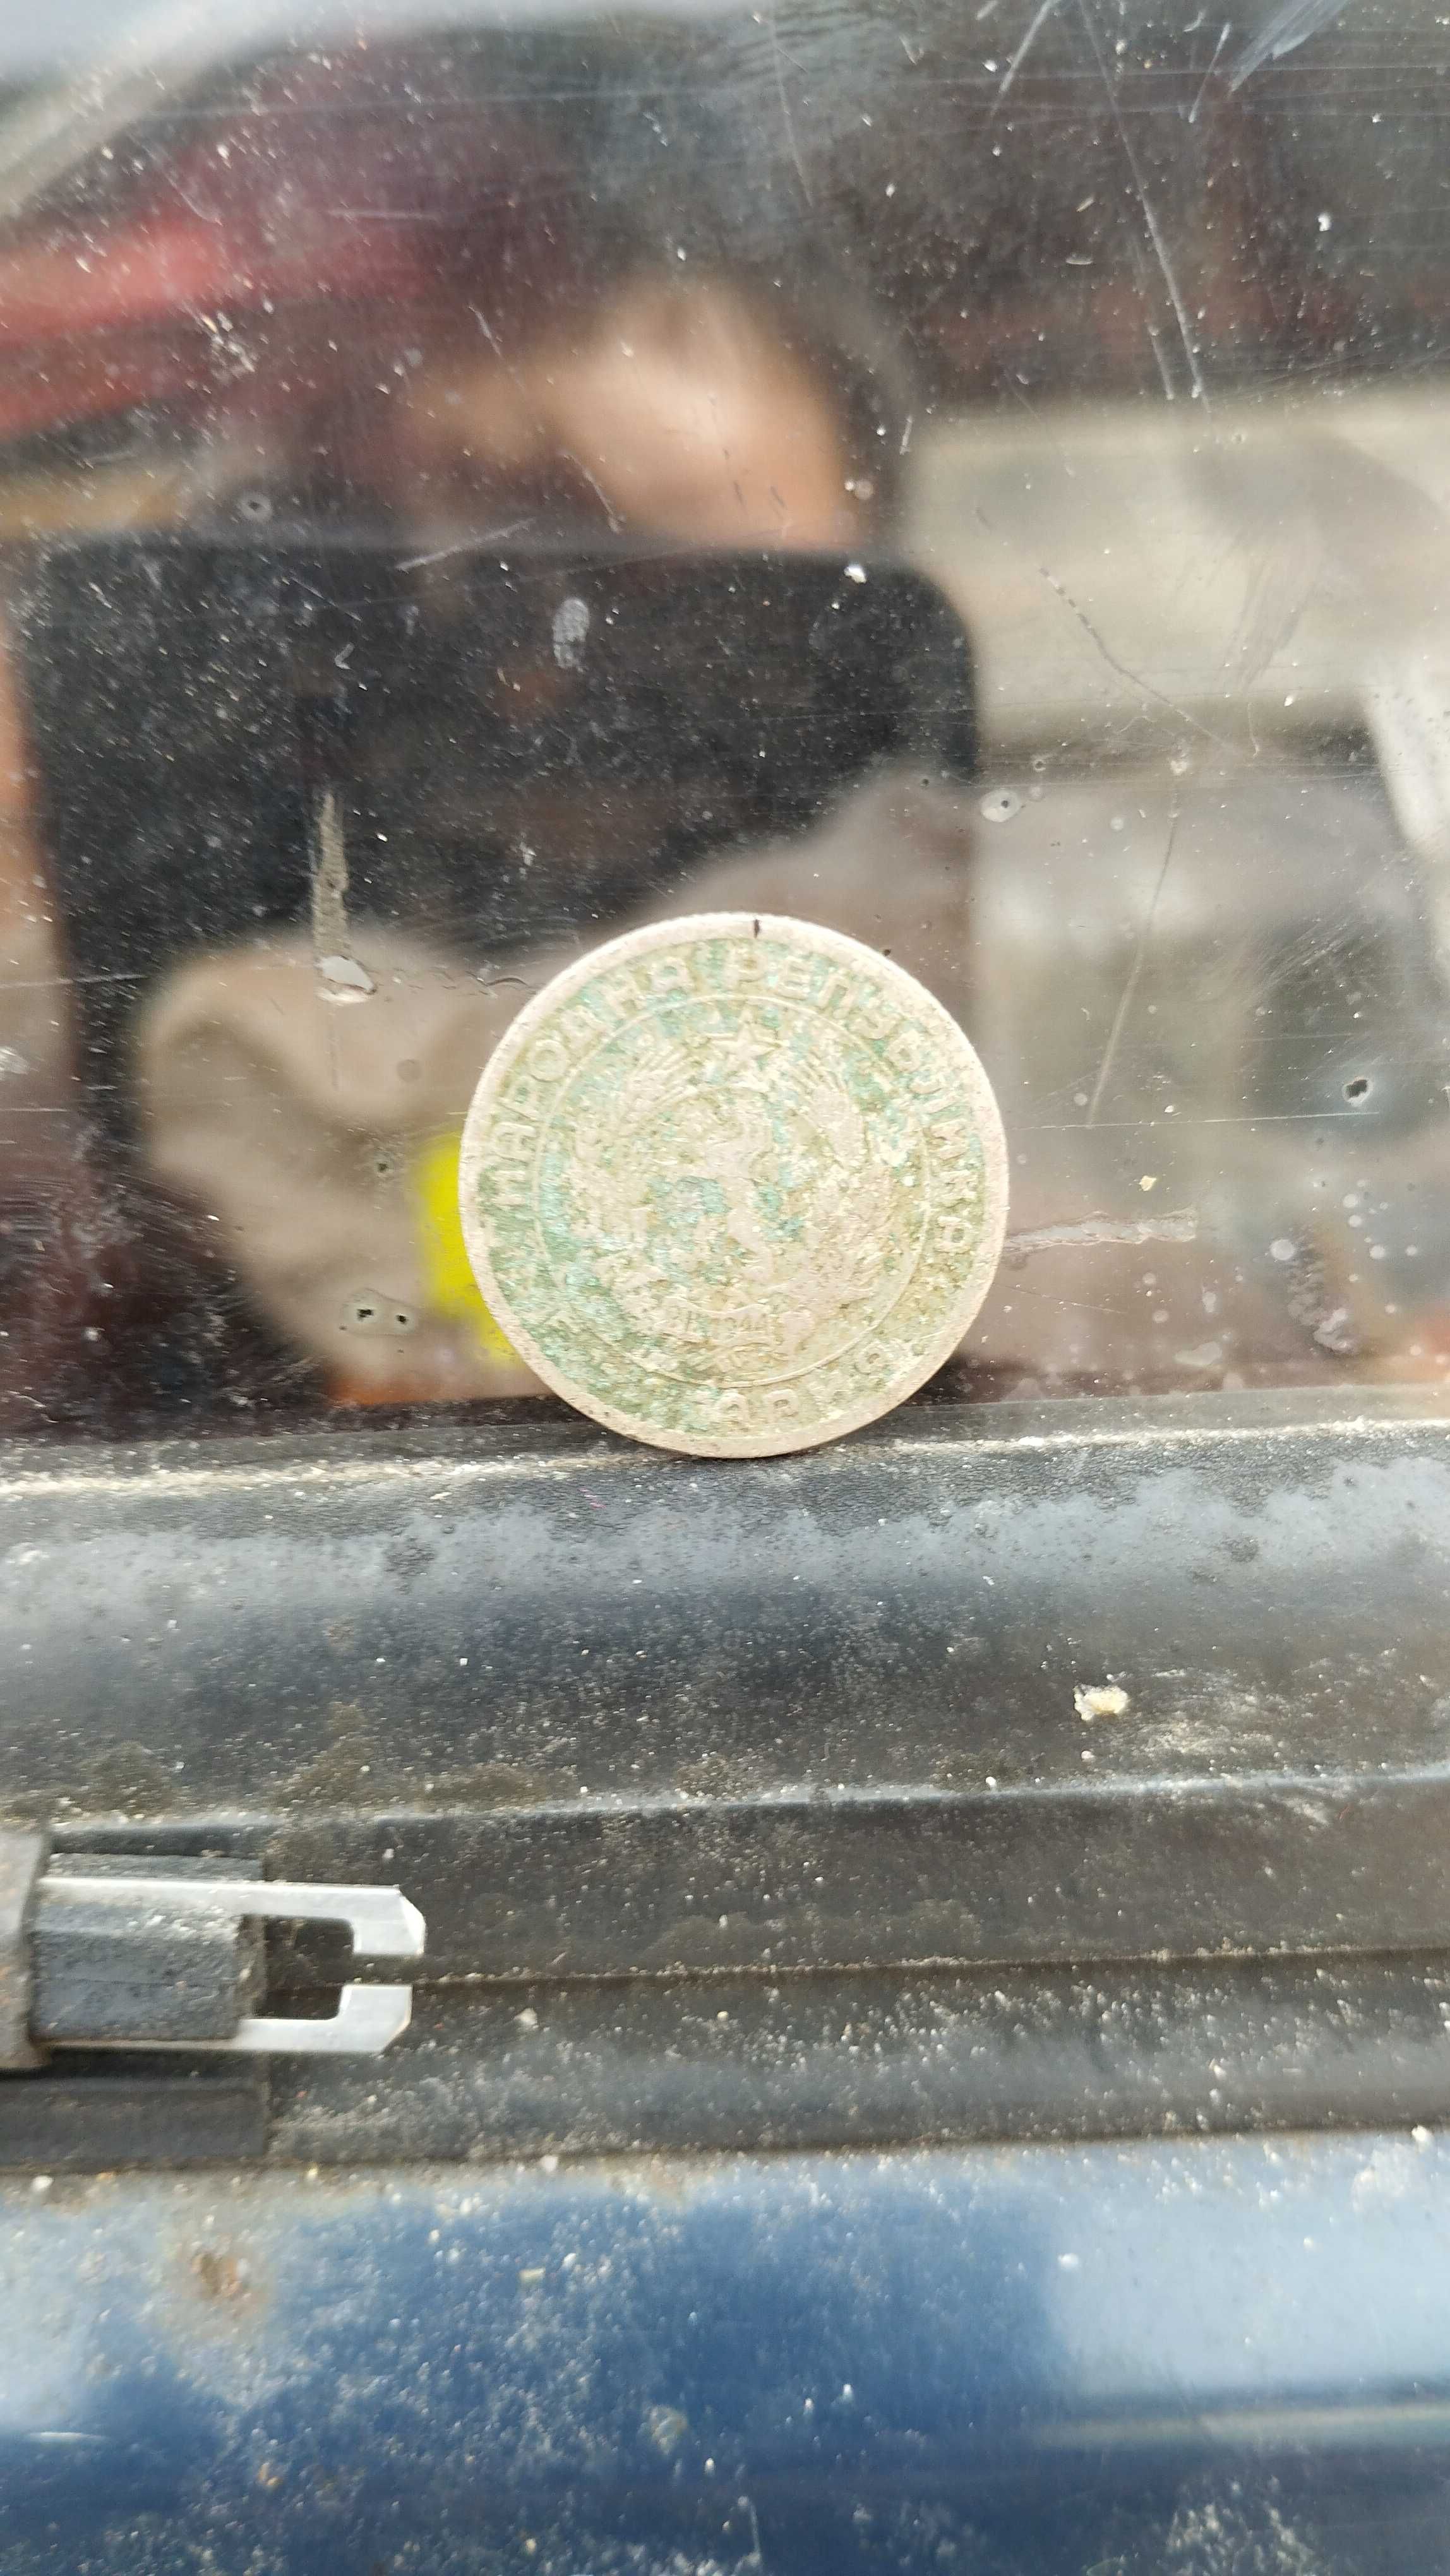 Монети български